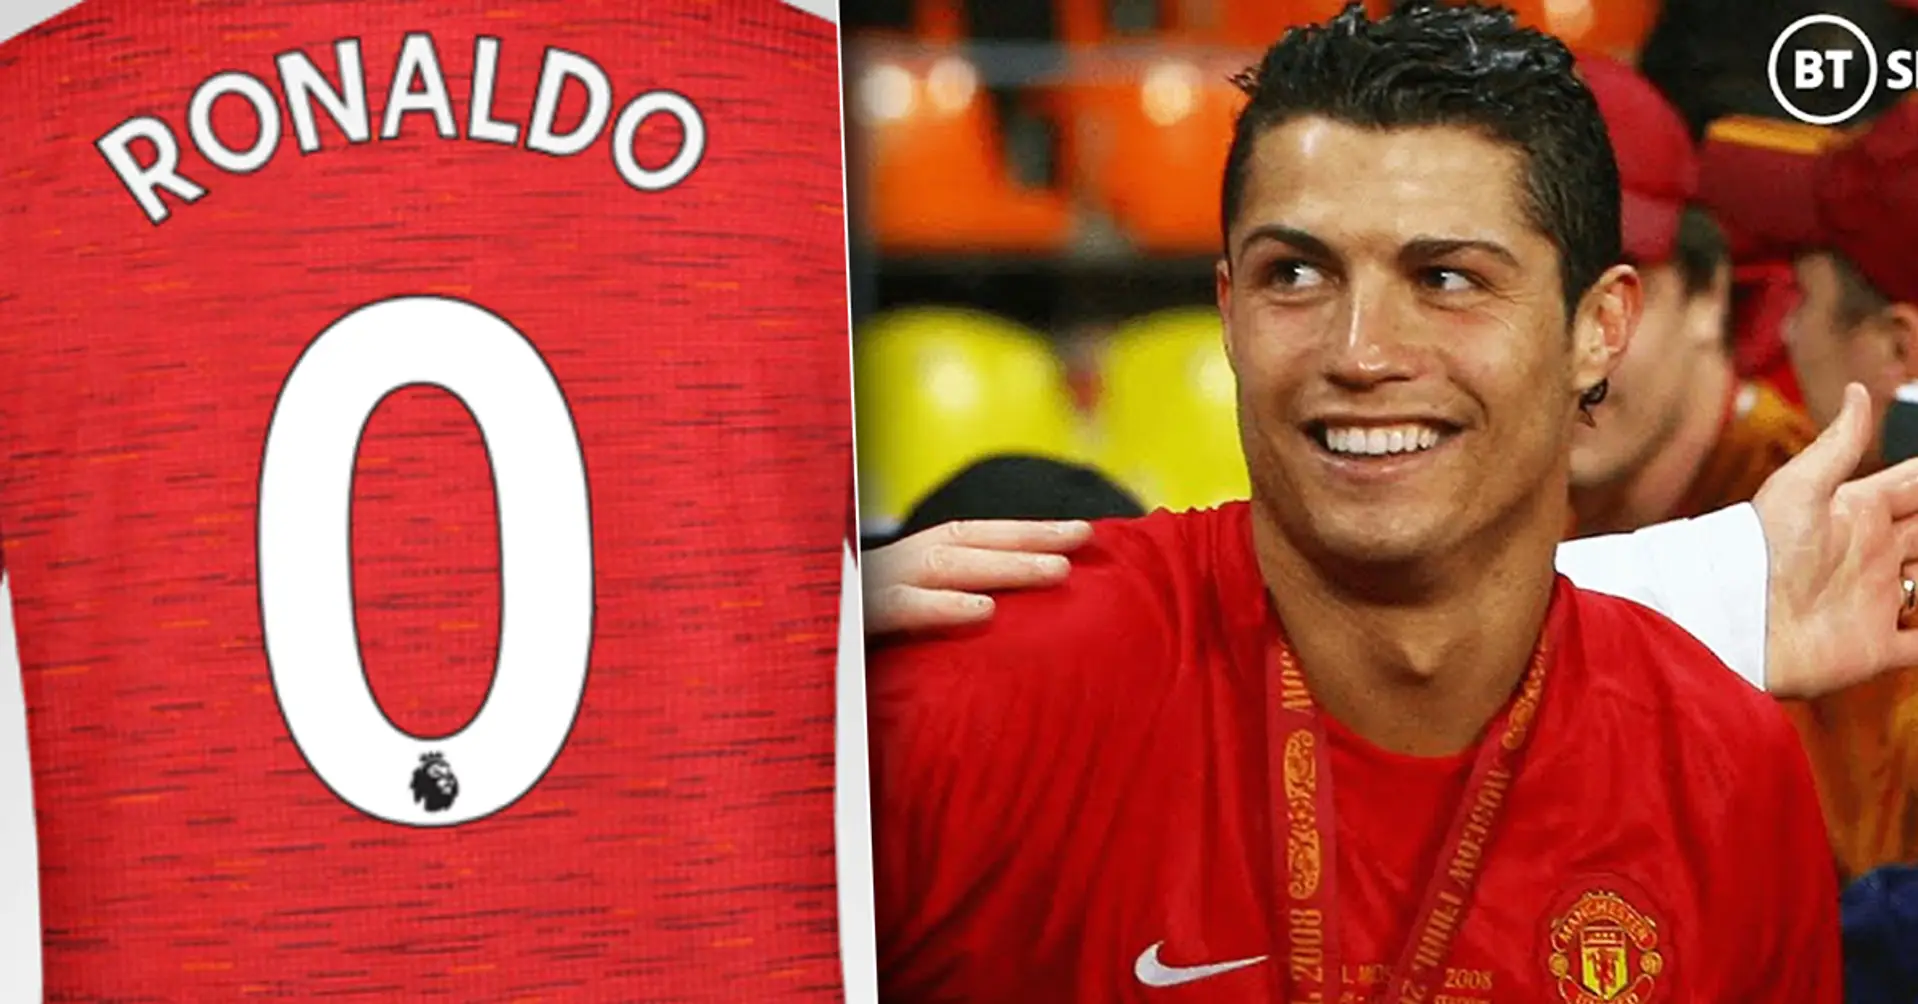 Erklärt: Welche Trikotnummer könnte Cristiano Ronaldo bei Manchester United tragen?